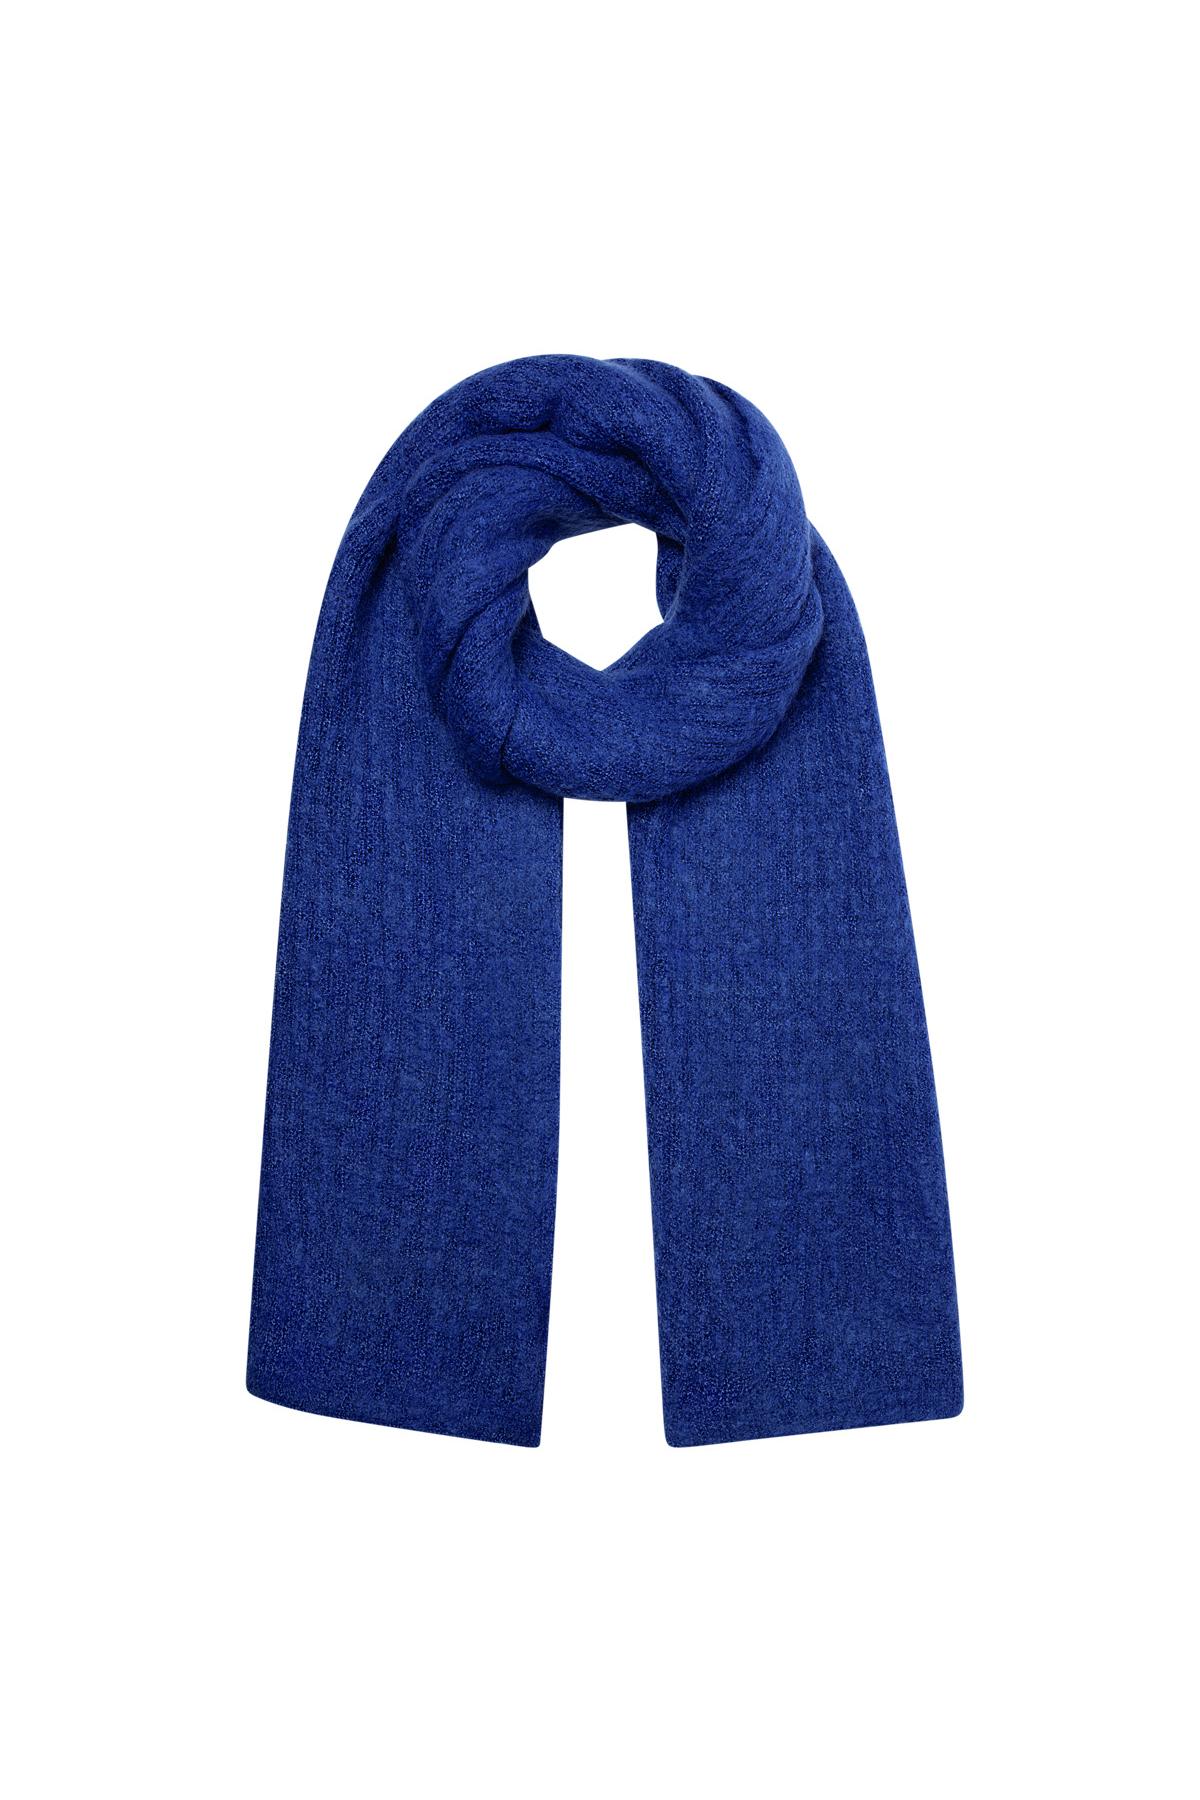 Echarpe tricot uni - bleu 